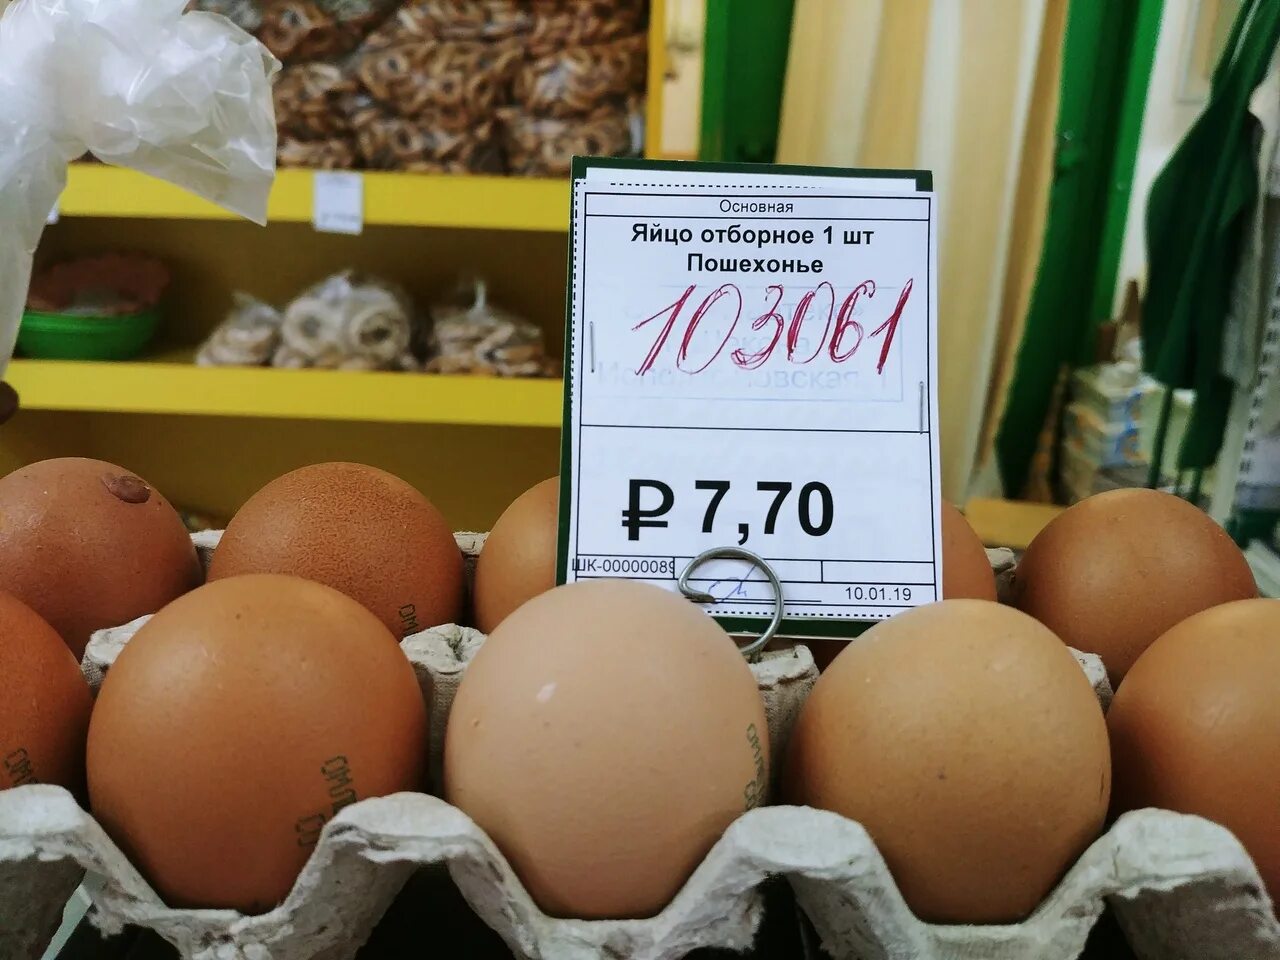 Купить яйца в белоруссии. Яйца в магазине. Яички в магазине. Ценник на яйца. Яйца на прилавке.